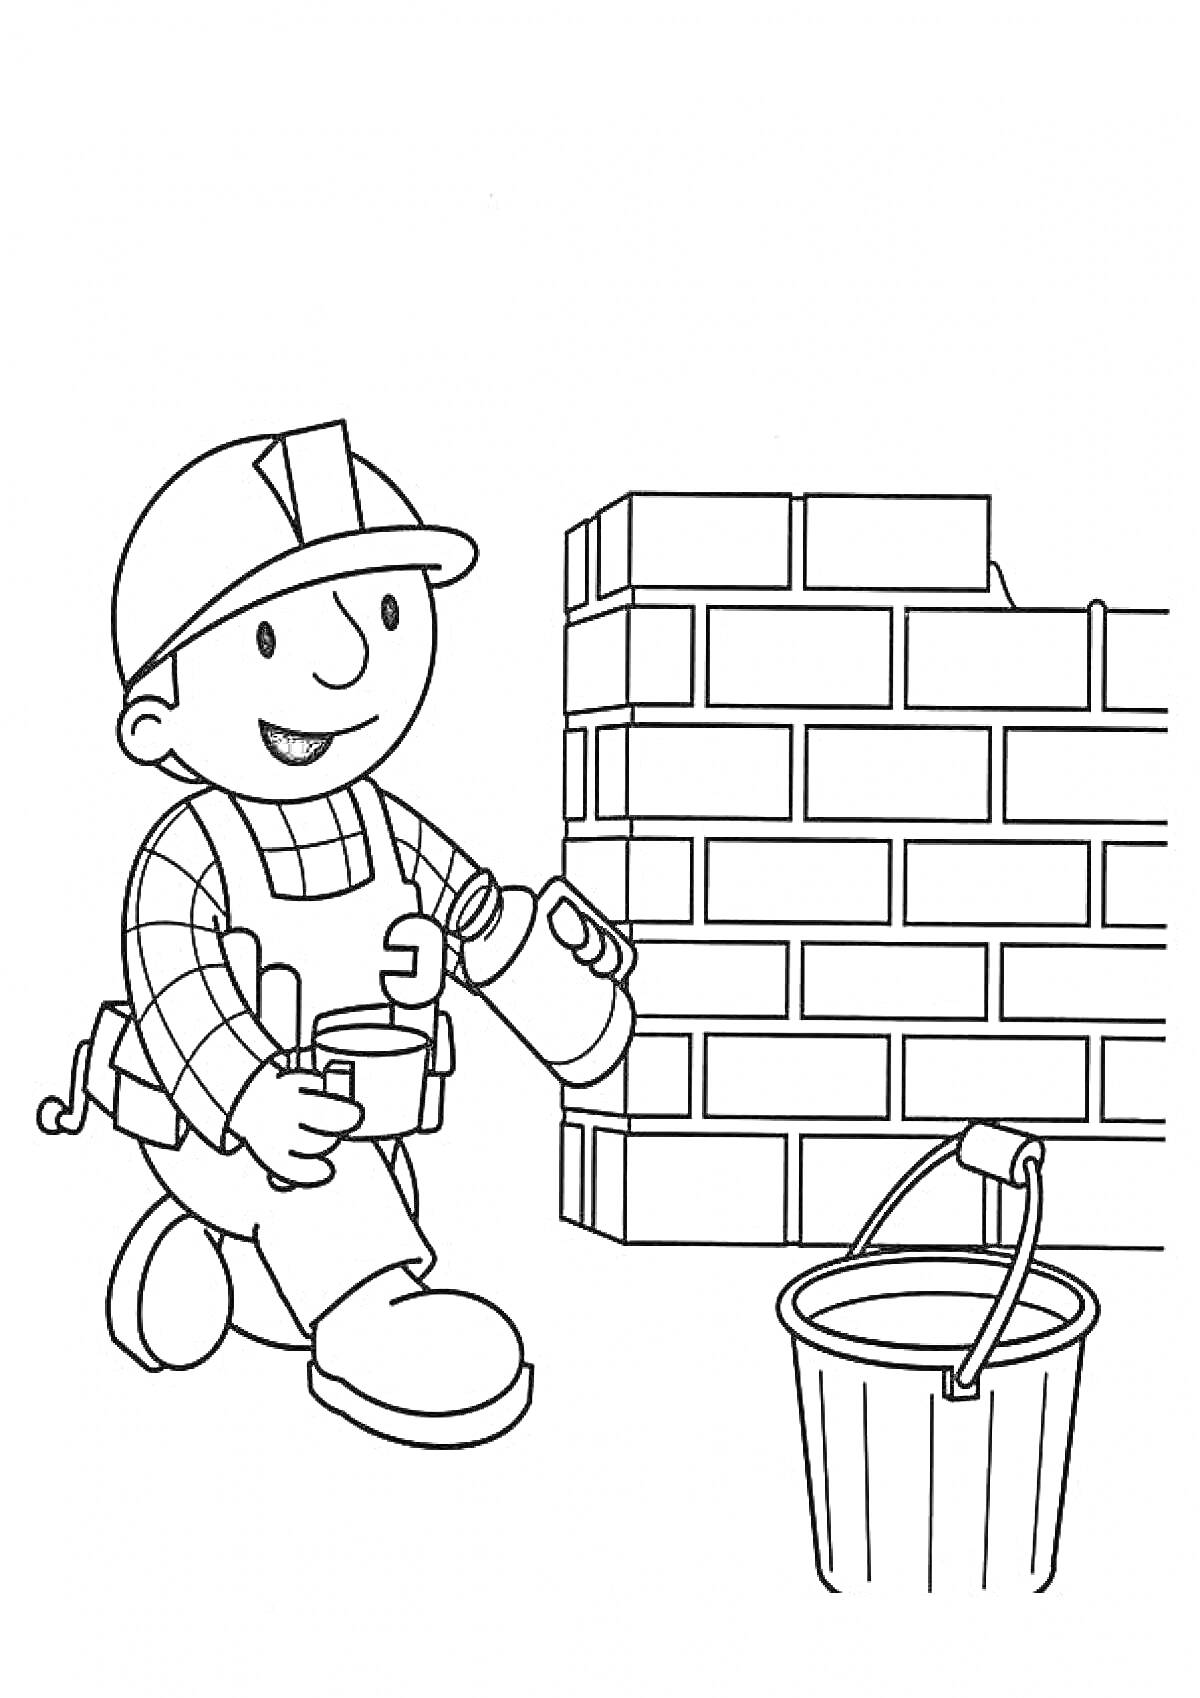 Раскраска Боб строитель кладет кирпичи и держит строительный раствор рядом с ведром